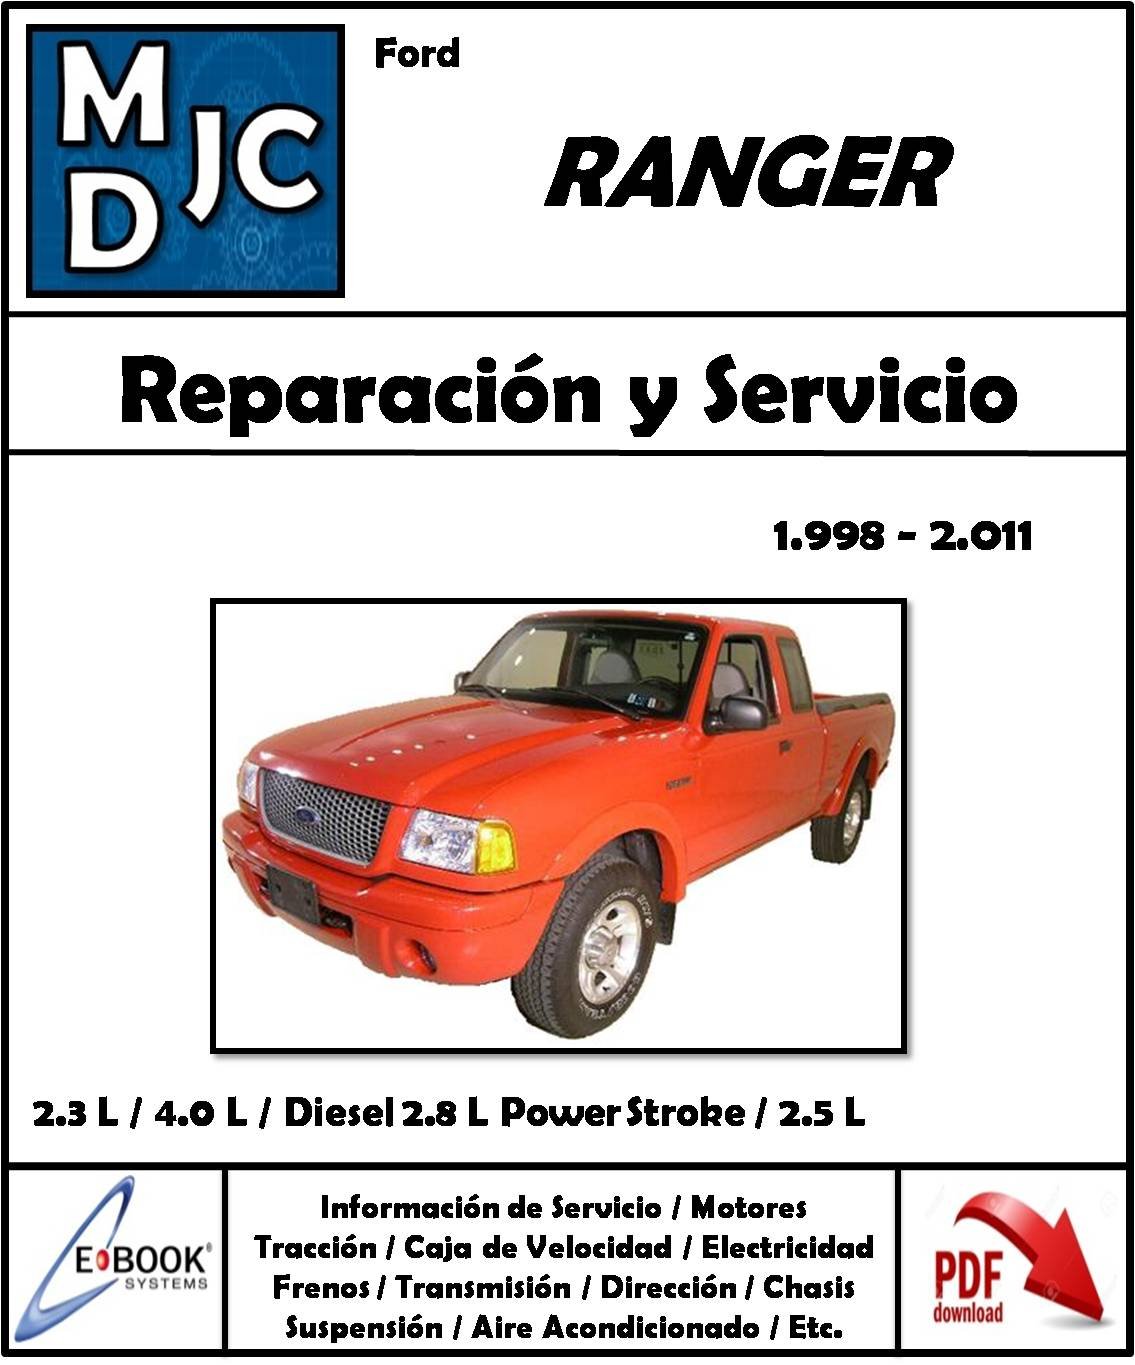 Ford Ranger 1998-2011